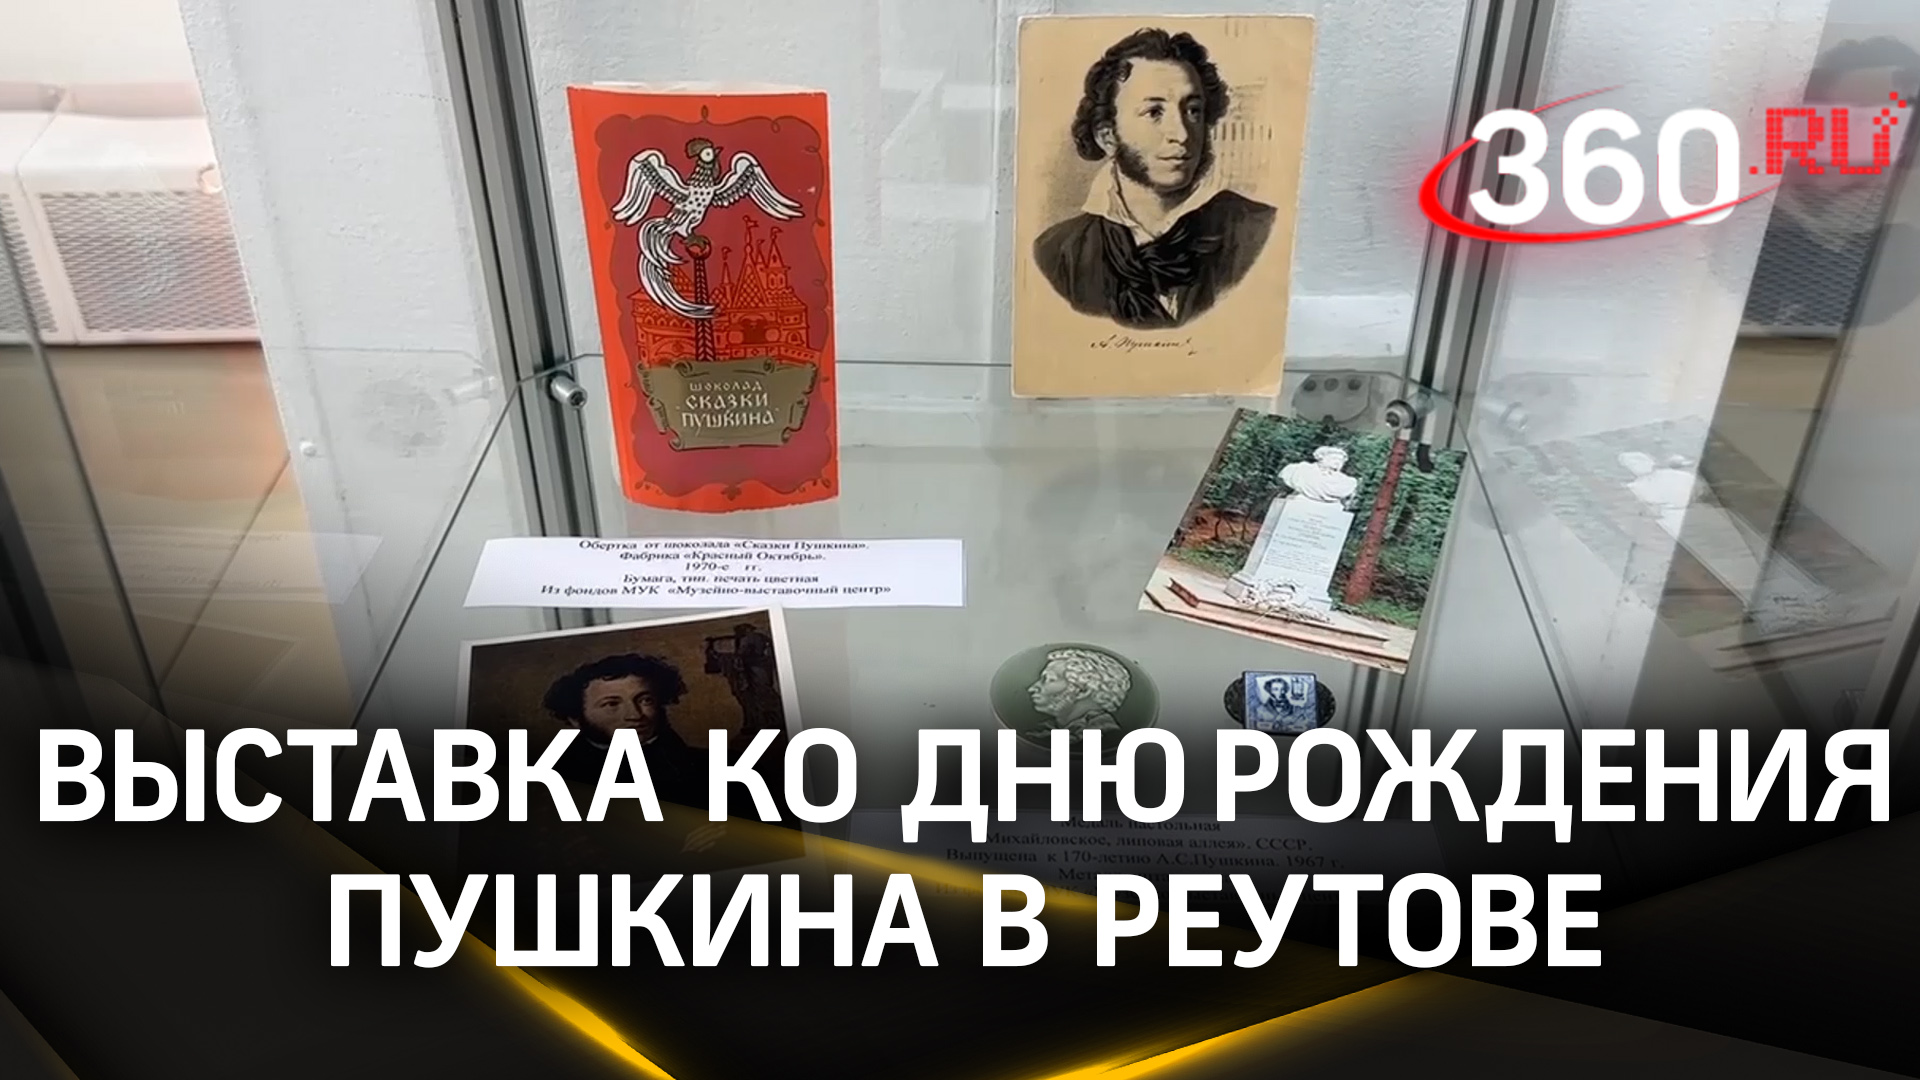 «И в новом веке Пушкин с нами»: выставка ко Дню рождения поэта в Реутове